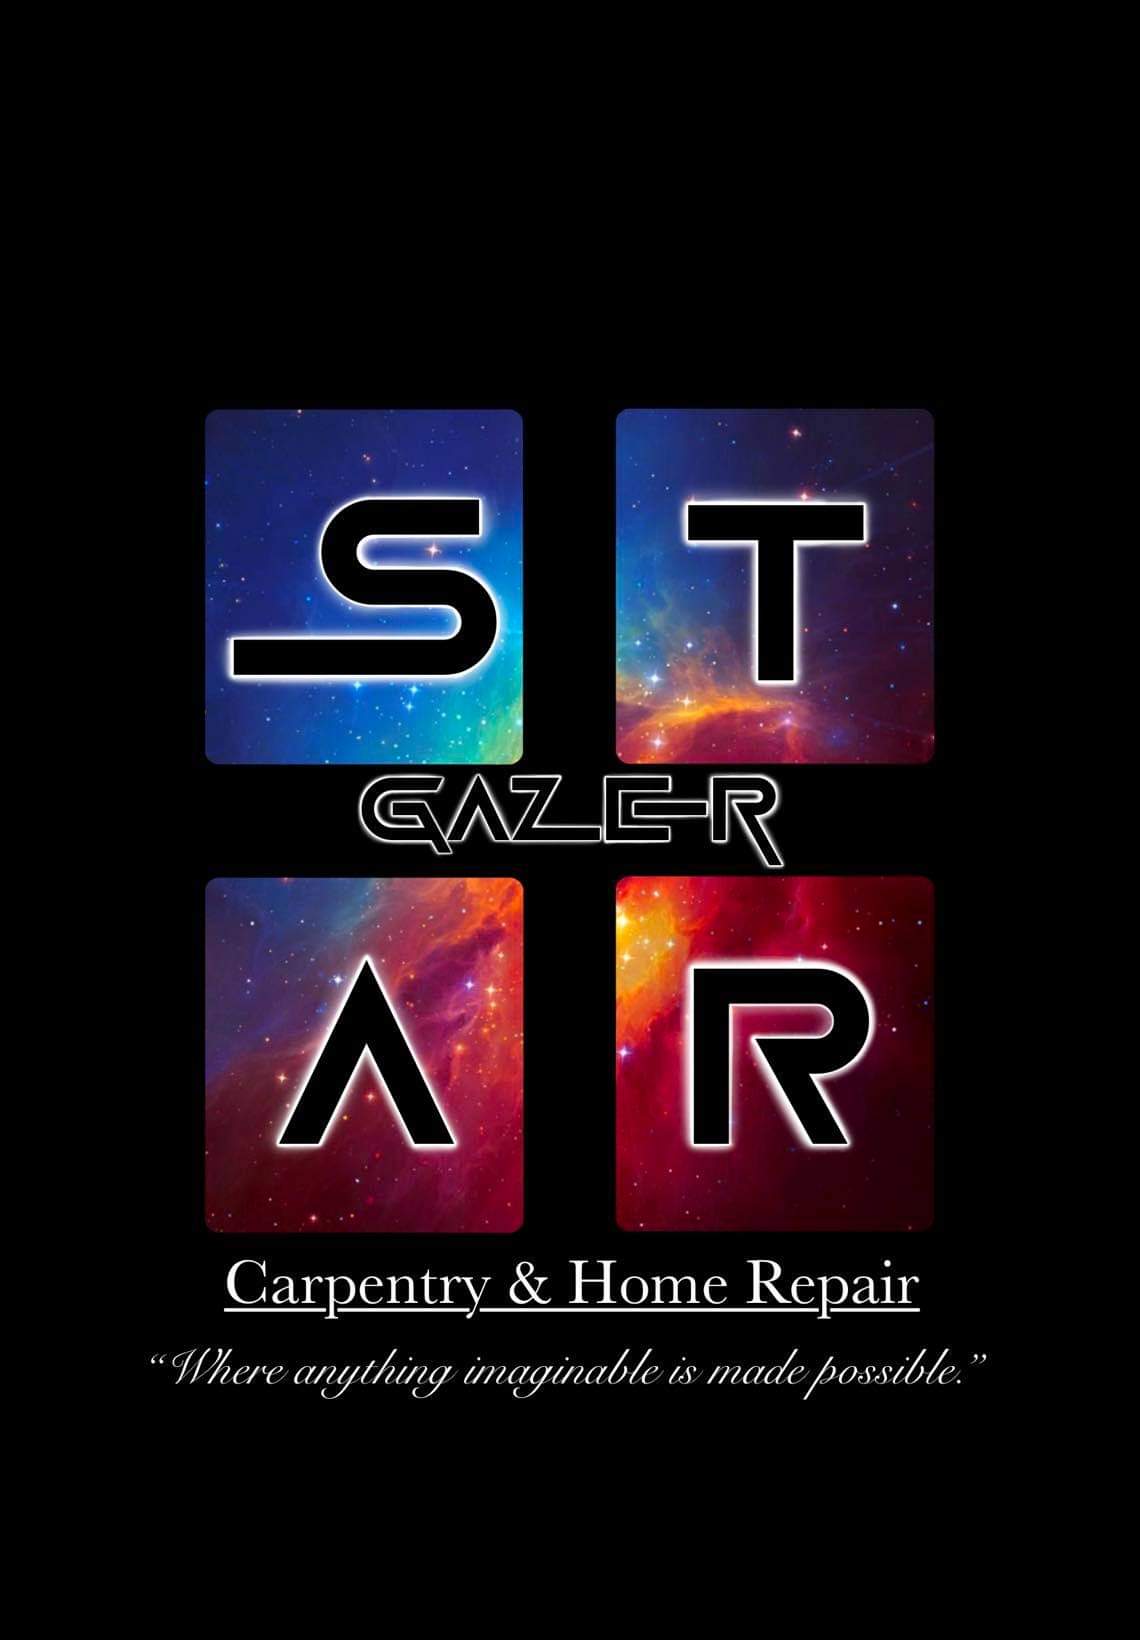 Star-Gazer Carpentry & Home Repair Logo